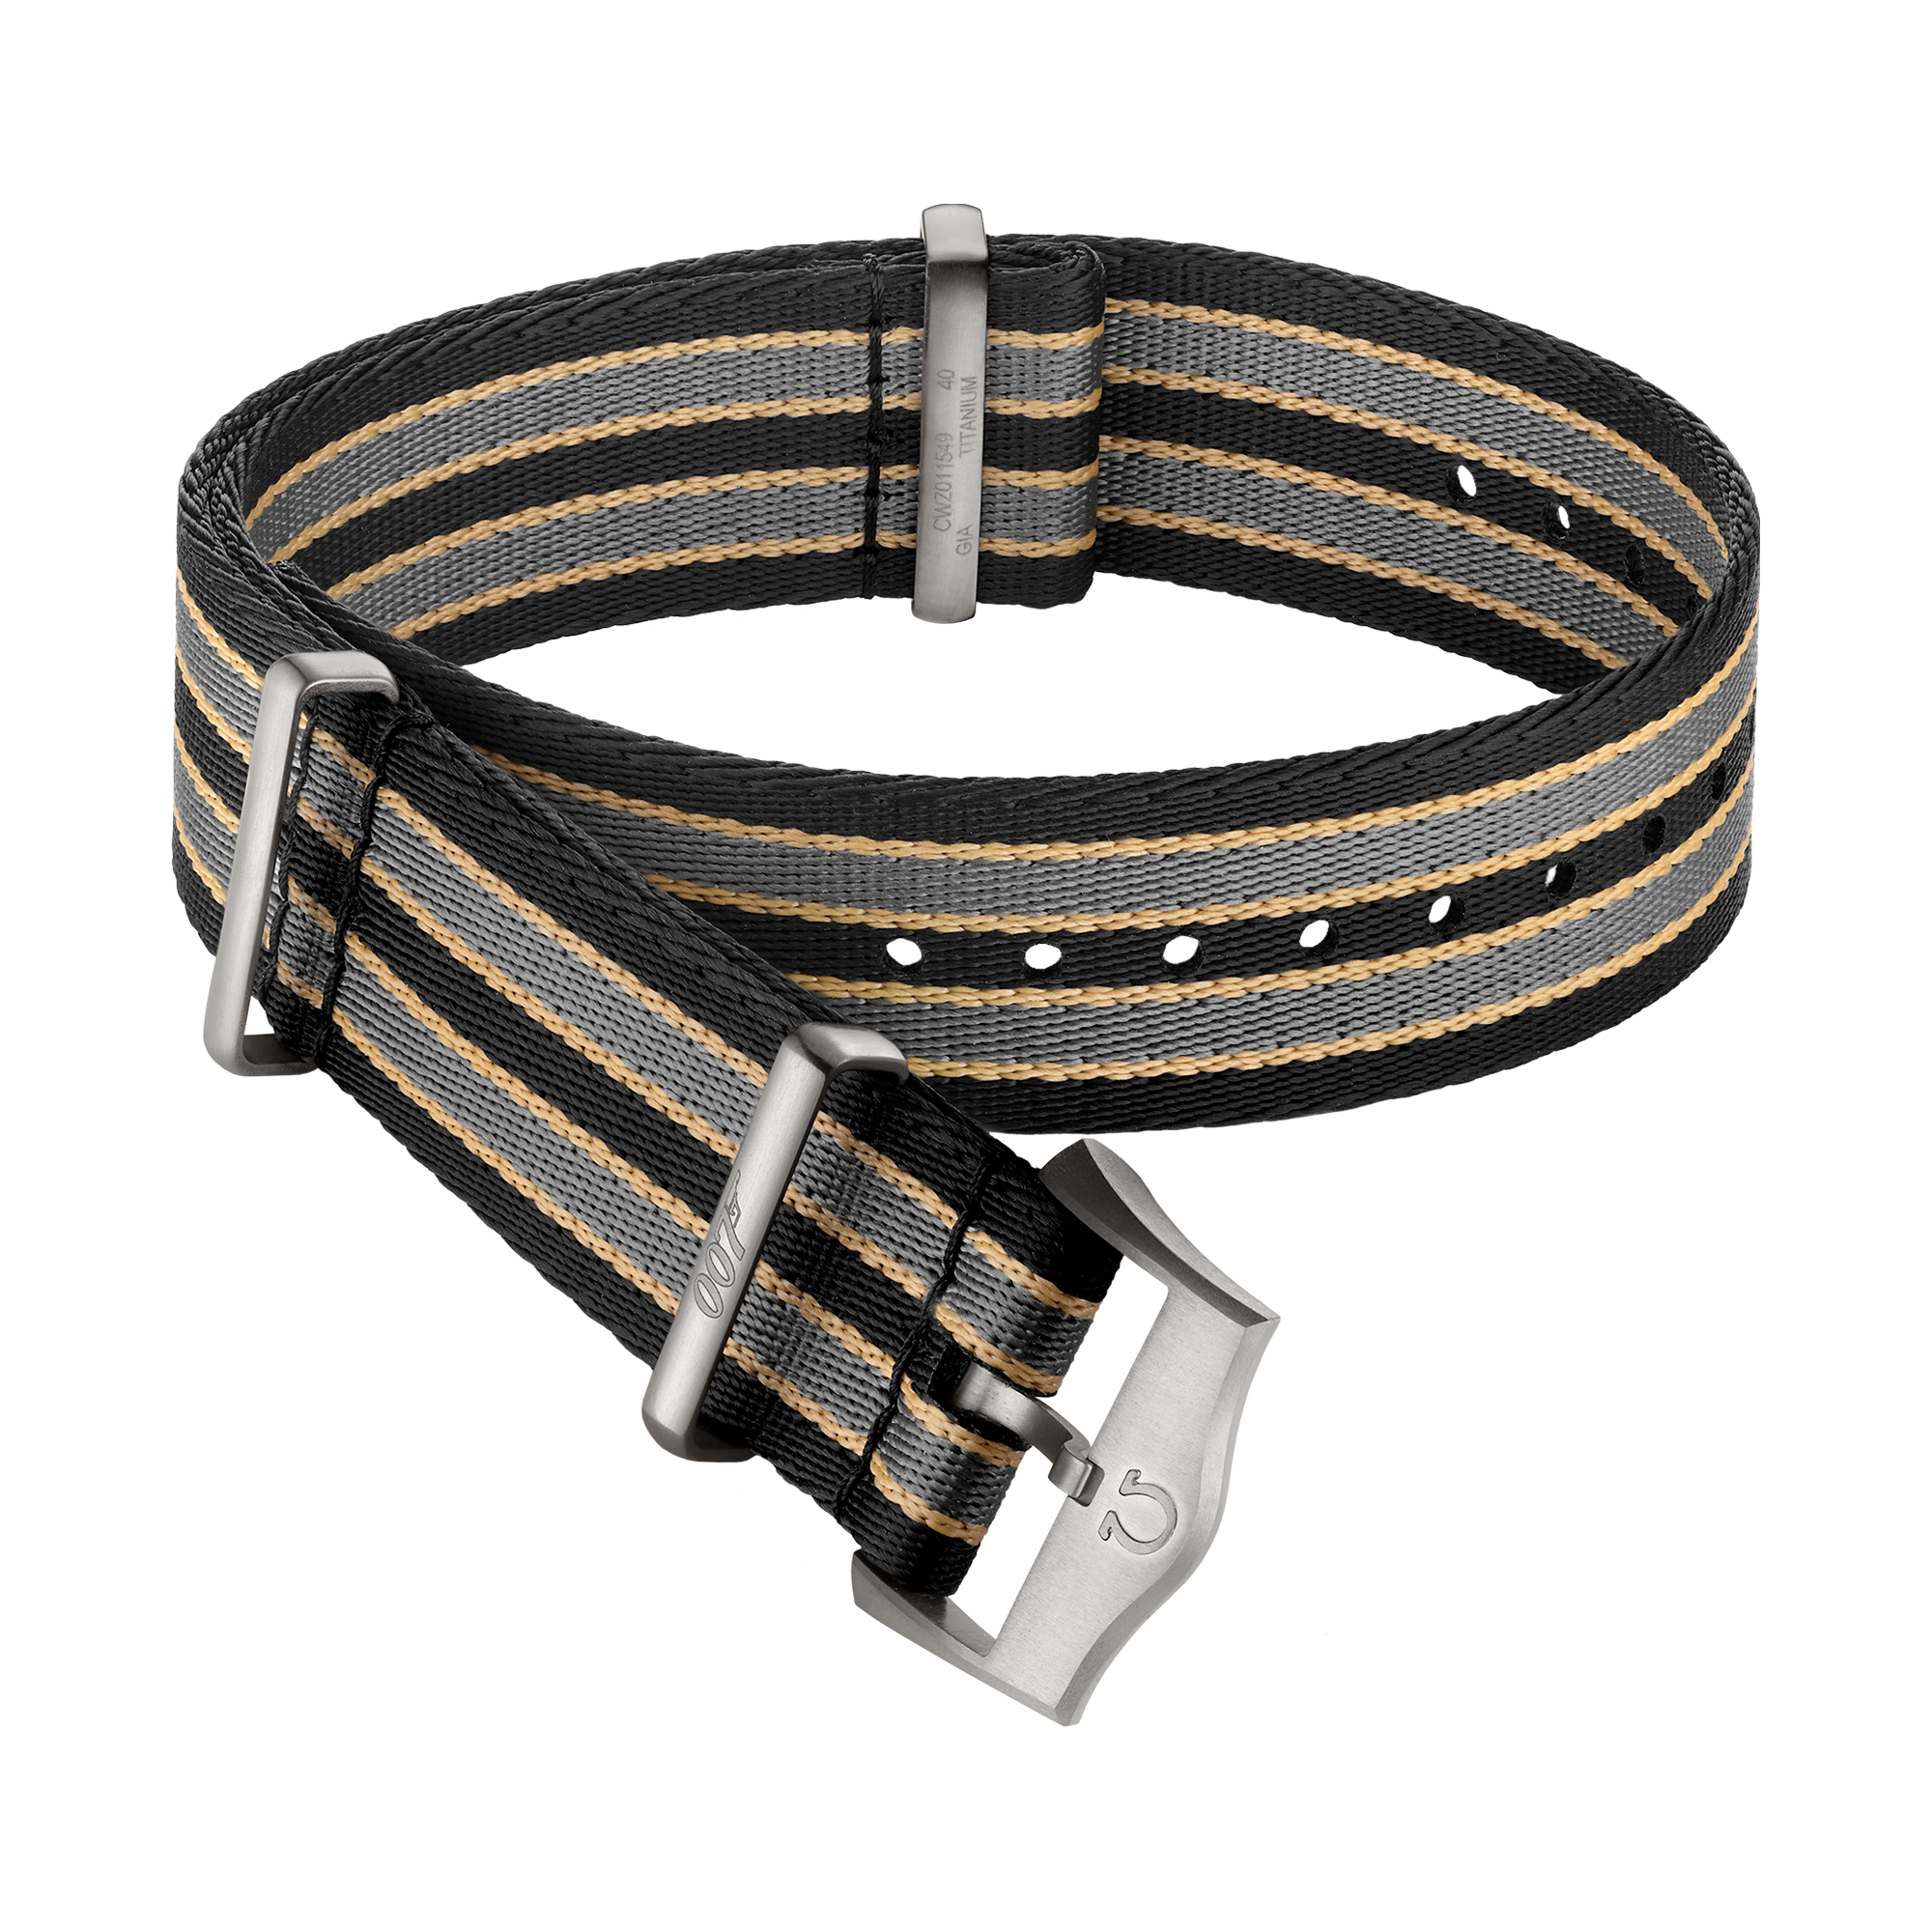 NATO strap - Polyamide striped dark brown, grey and beige strap - 031CWZ014739